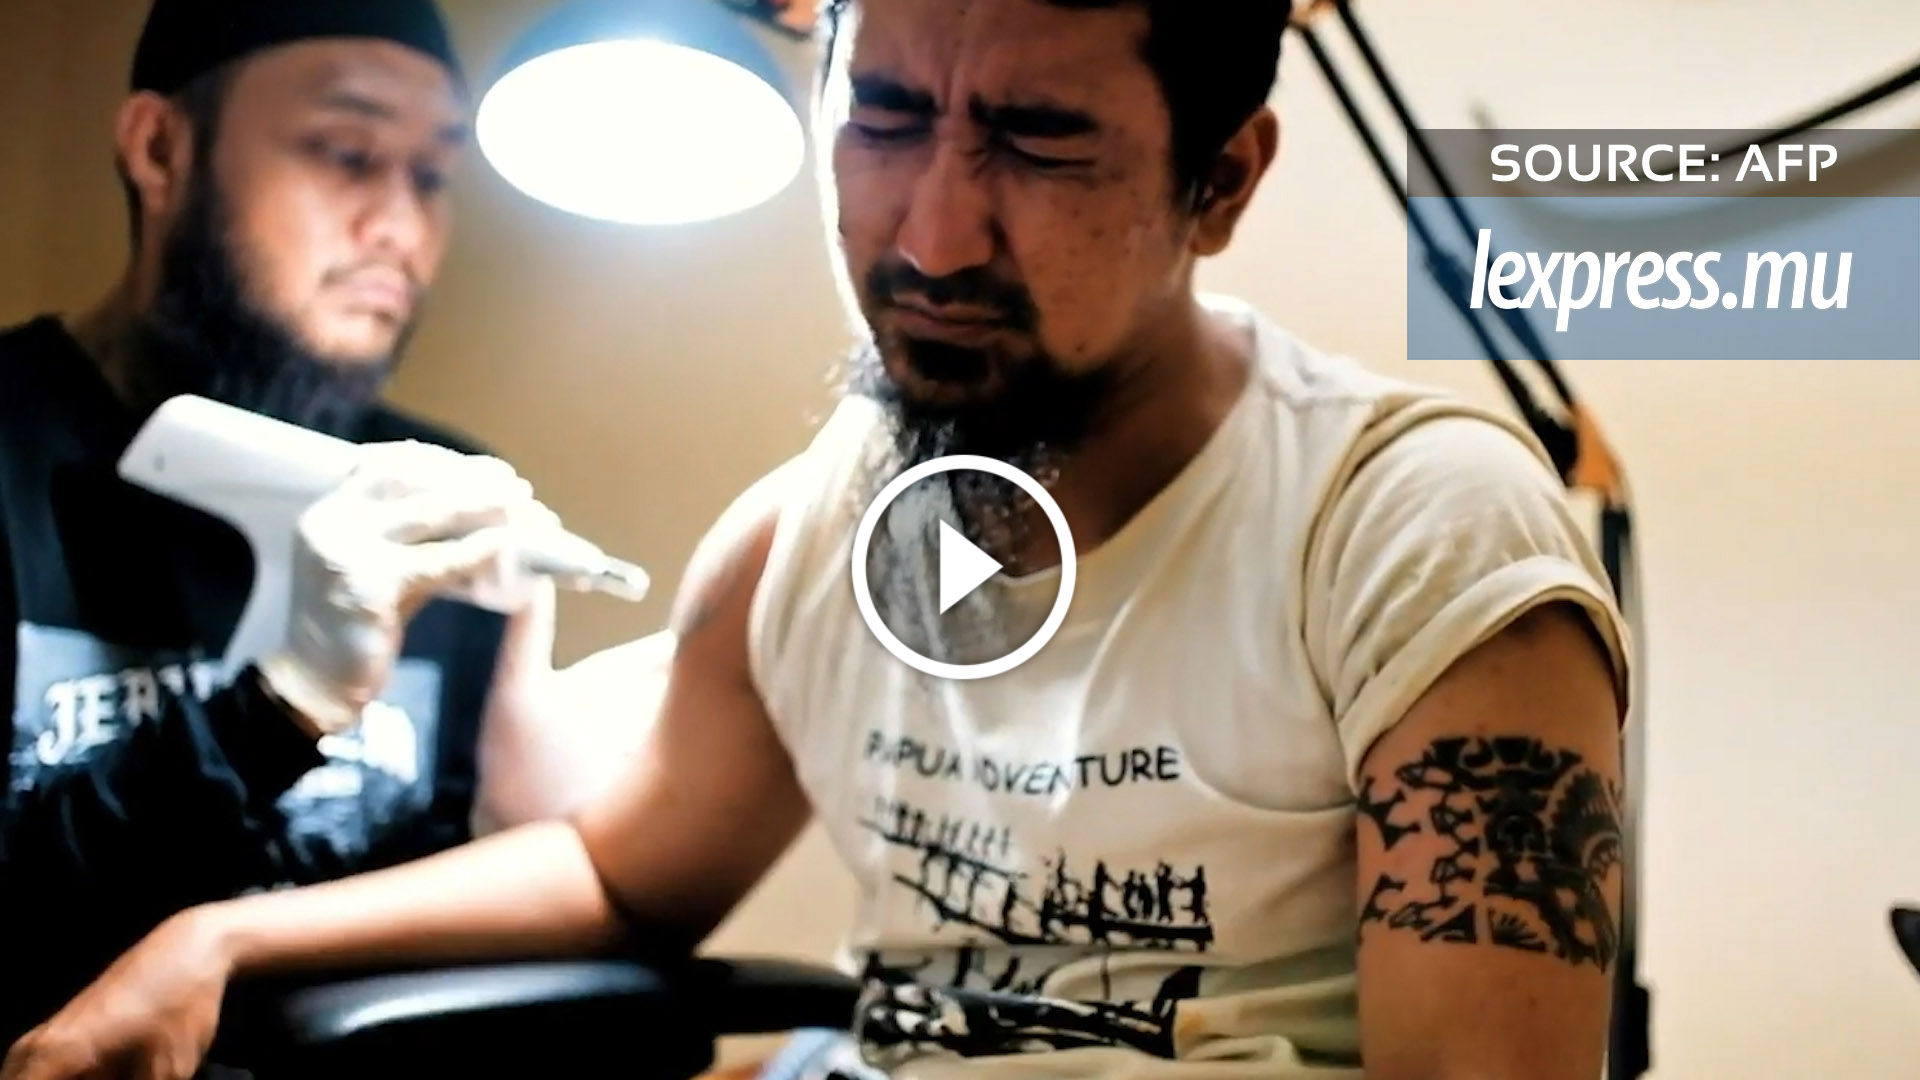 En Indonésie, effacer les tatouages pour expier ses péchés